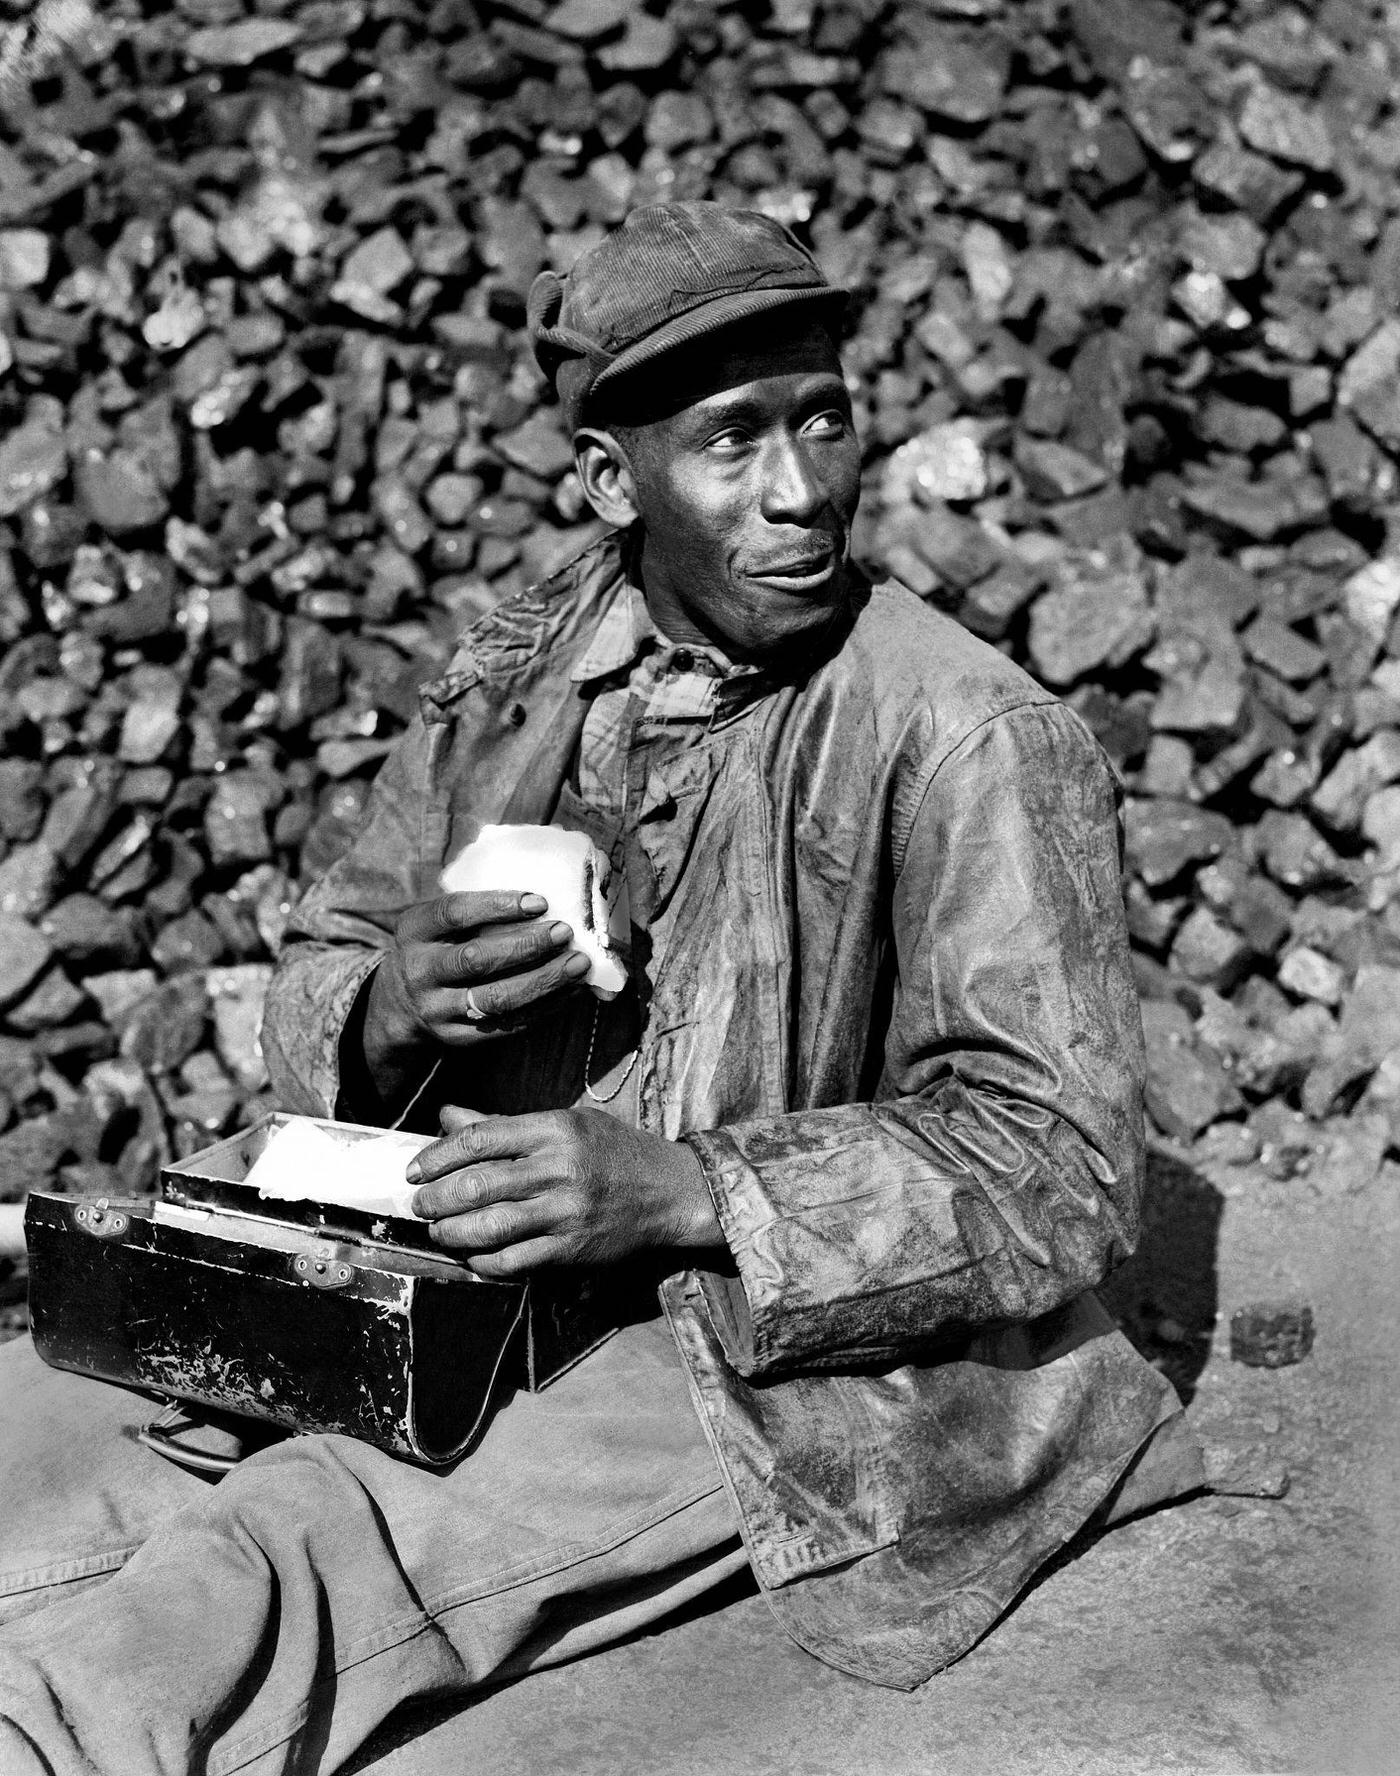 Coal Worker at Coal Yard, Oak Ridge, Tennessee, 1945.